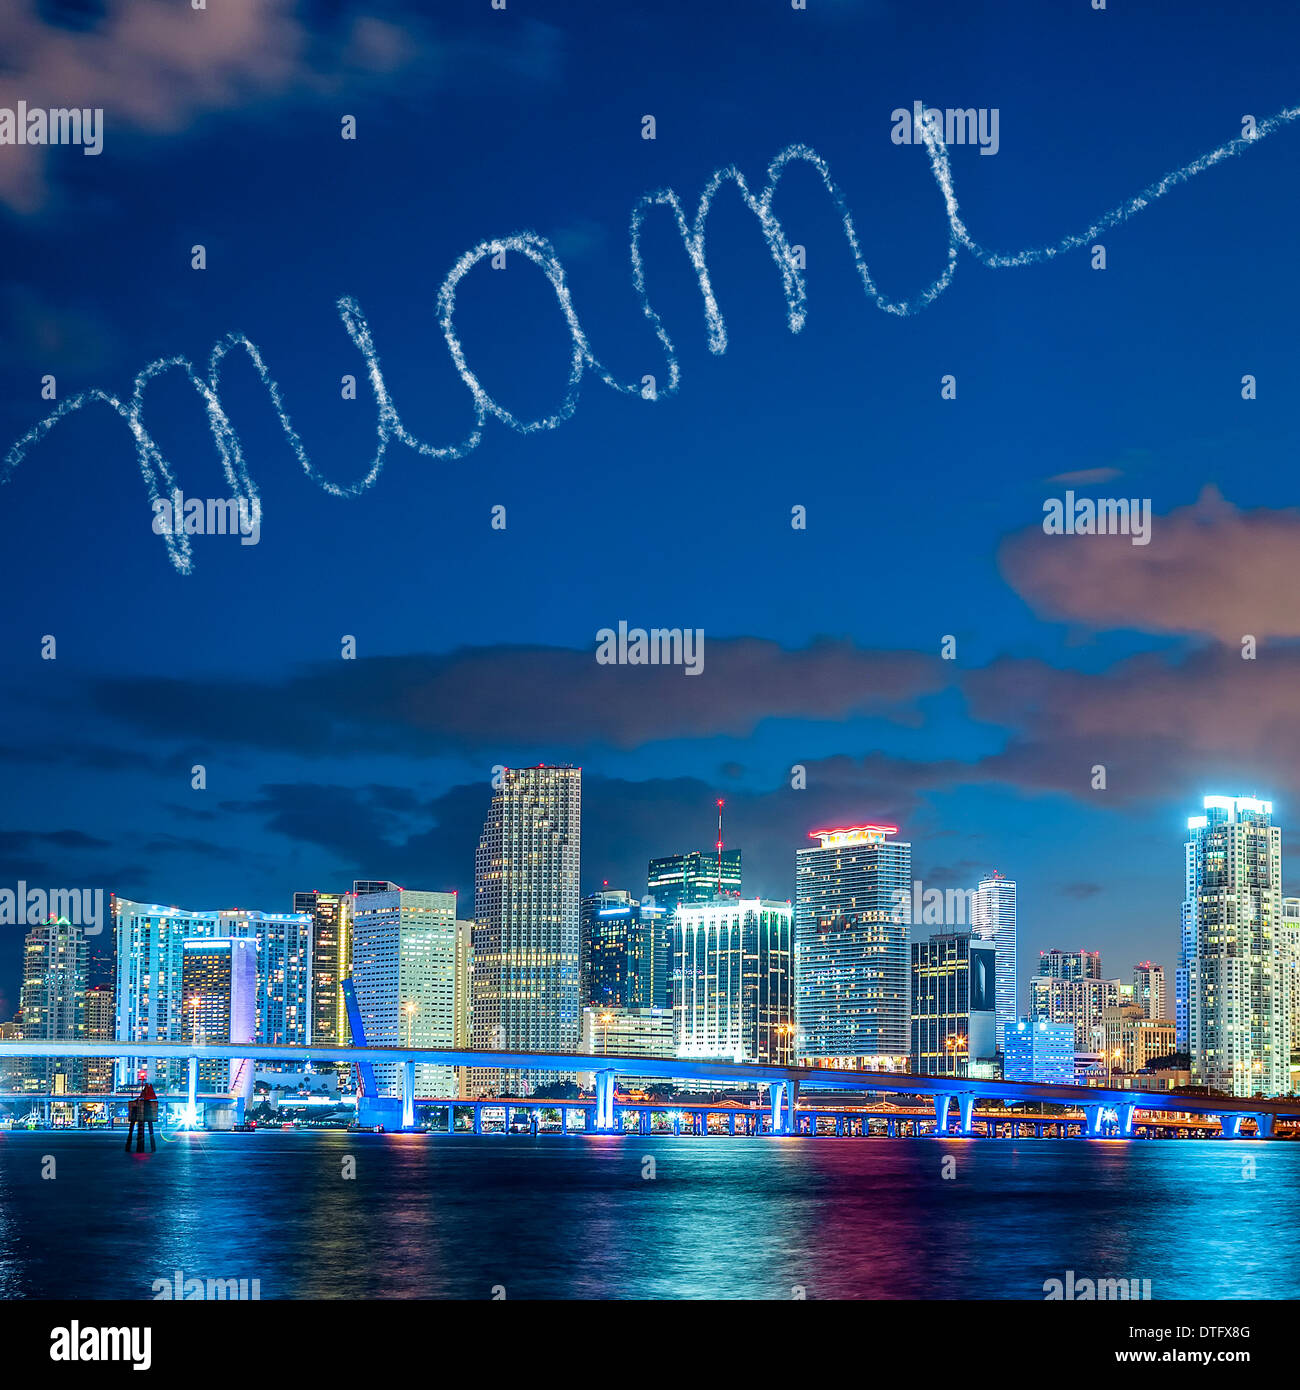 Miami (Floride), coucher de soleil d'été avec panorama lumineux colorés et les bâtiments résidentiels et d'affaires pont sur Biscayne Bay Banque D'Images